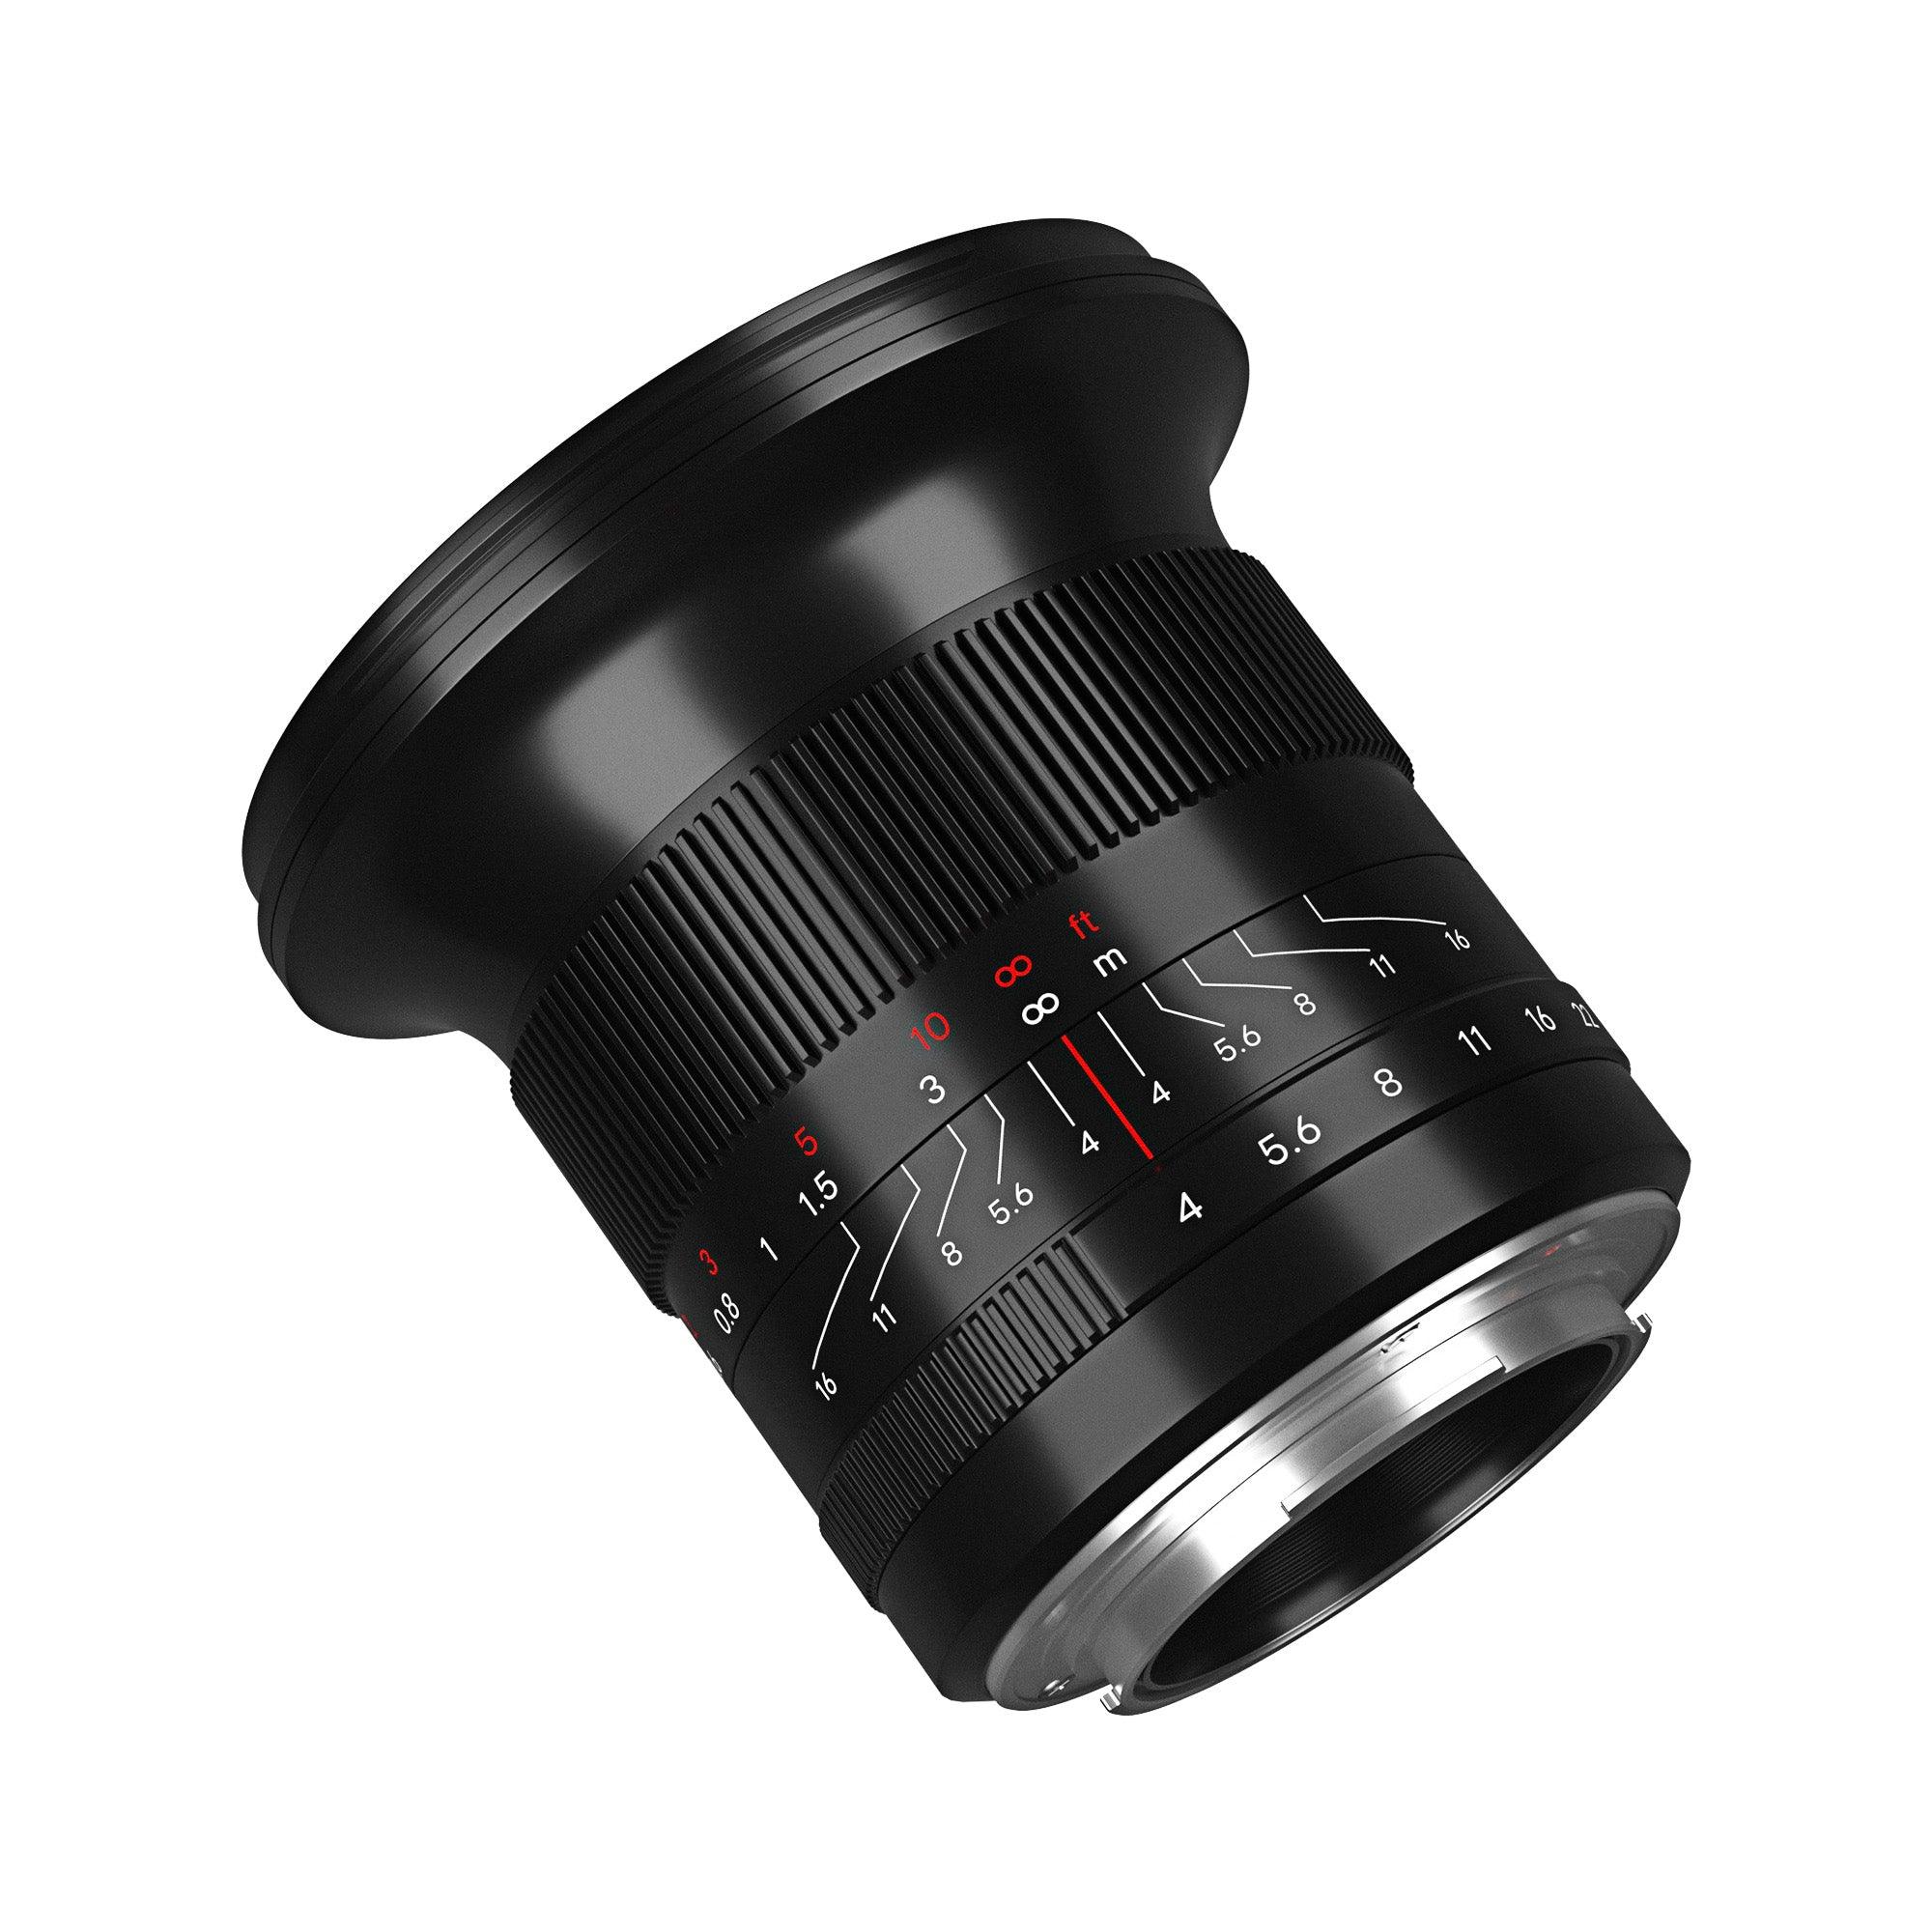 7Artisans 15mm F4 Large Aperture Full-frame lens - Vitopal